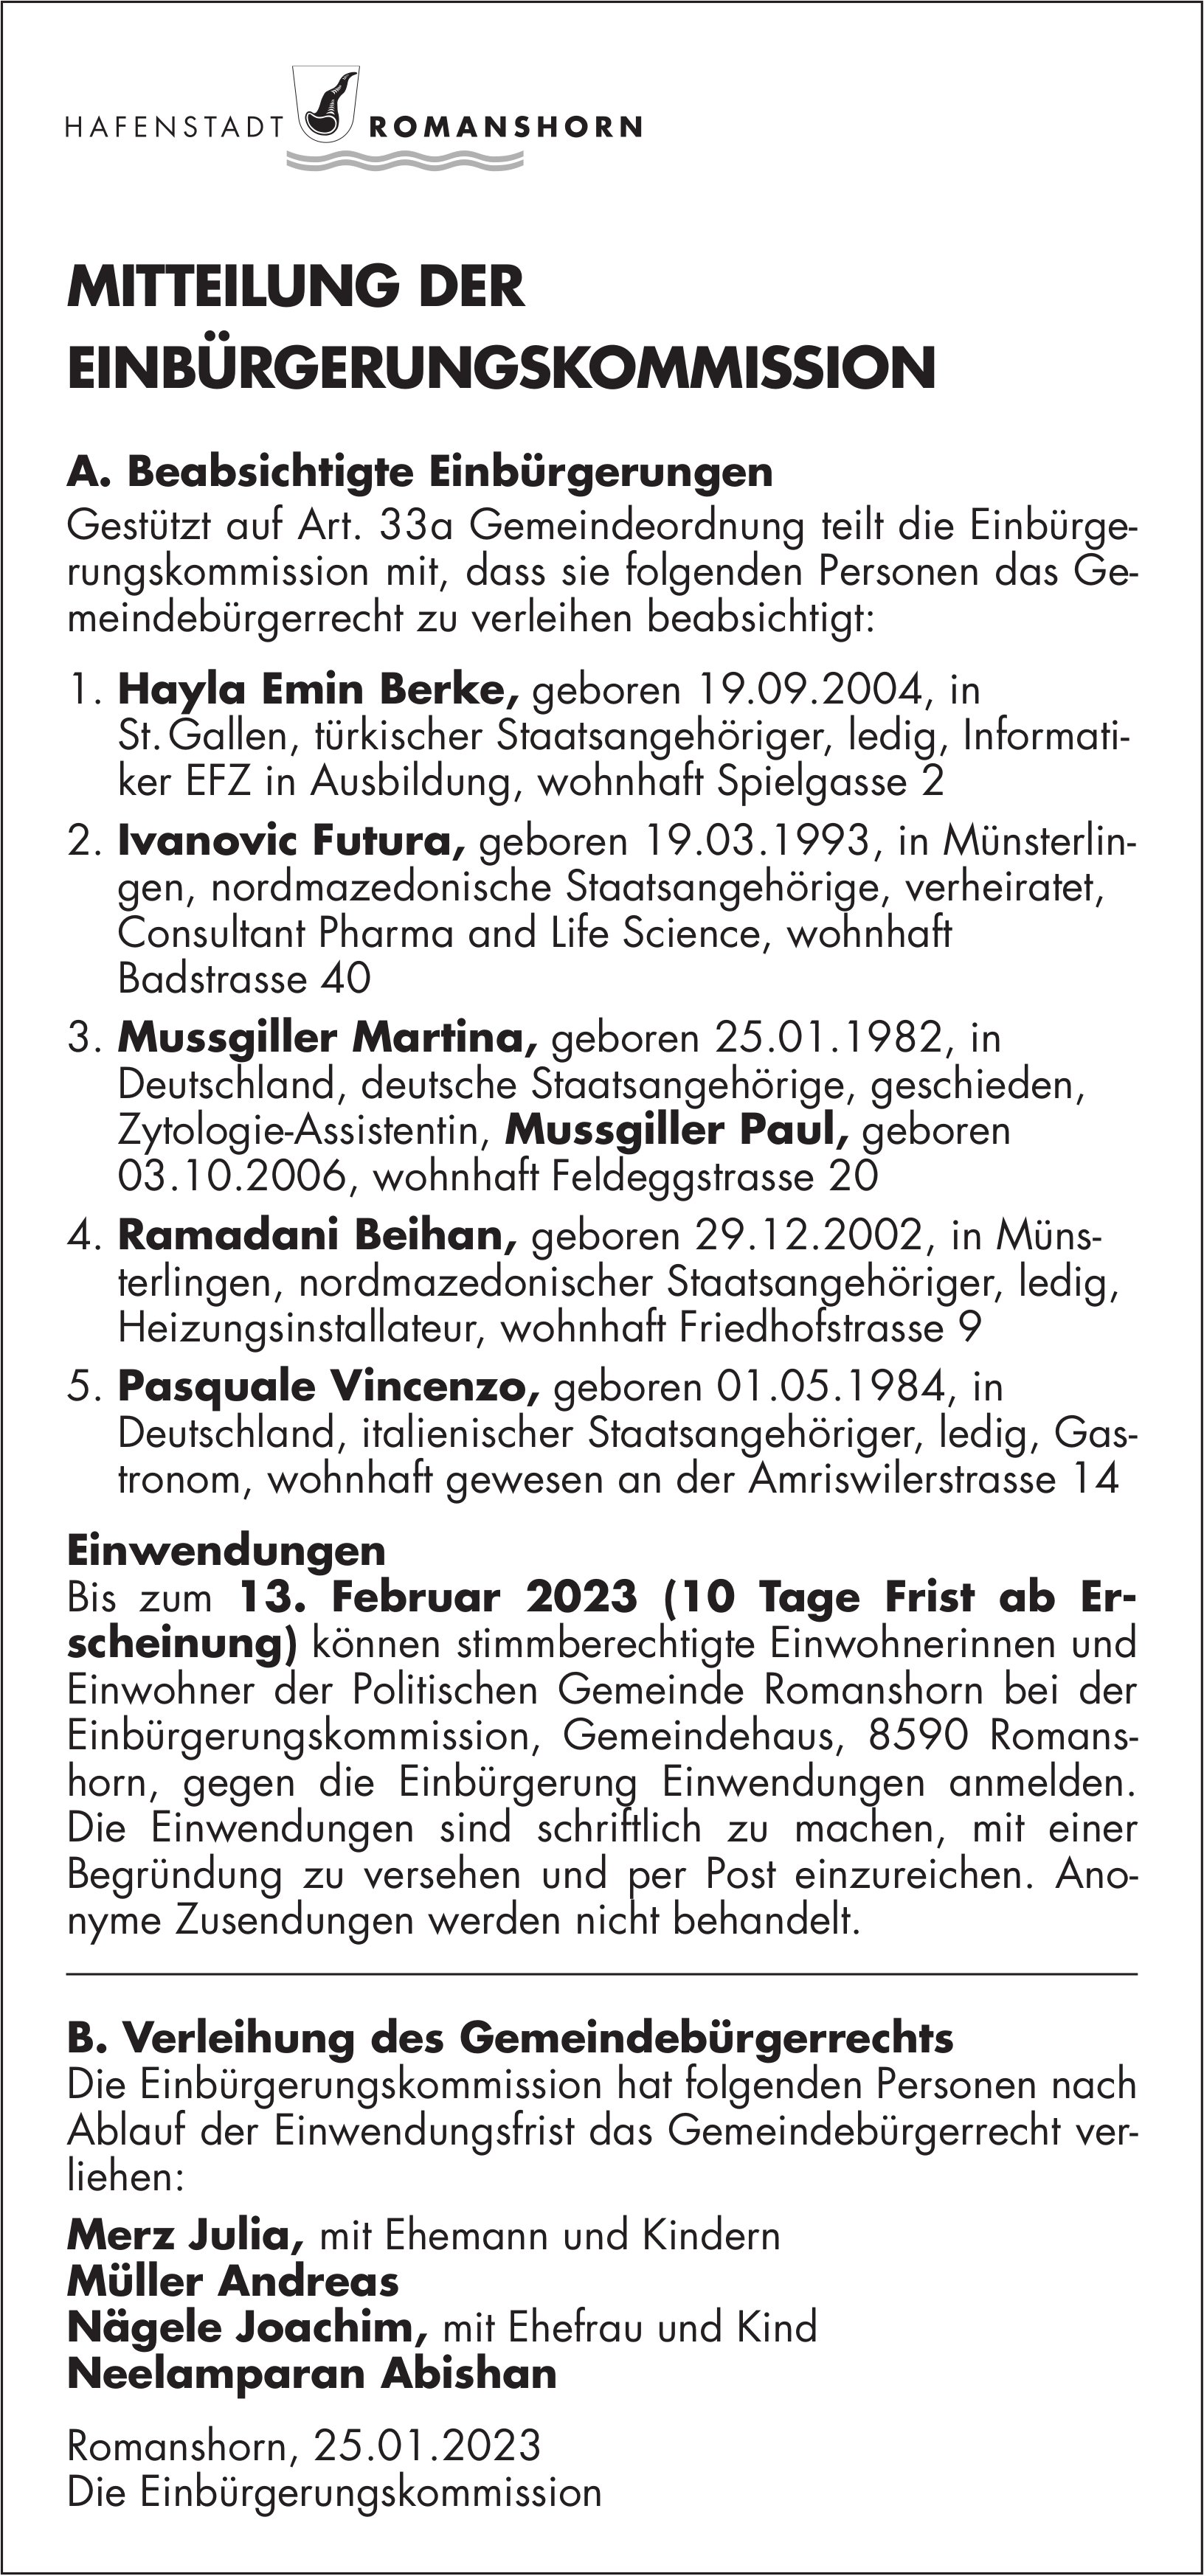 Romanshorn - Mitteilung der Einbürgerungskommission vom 25. Januar 2023